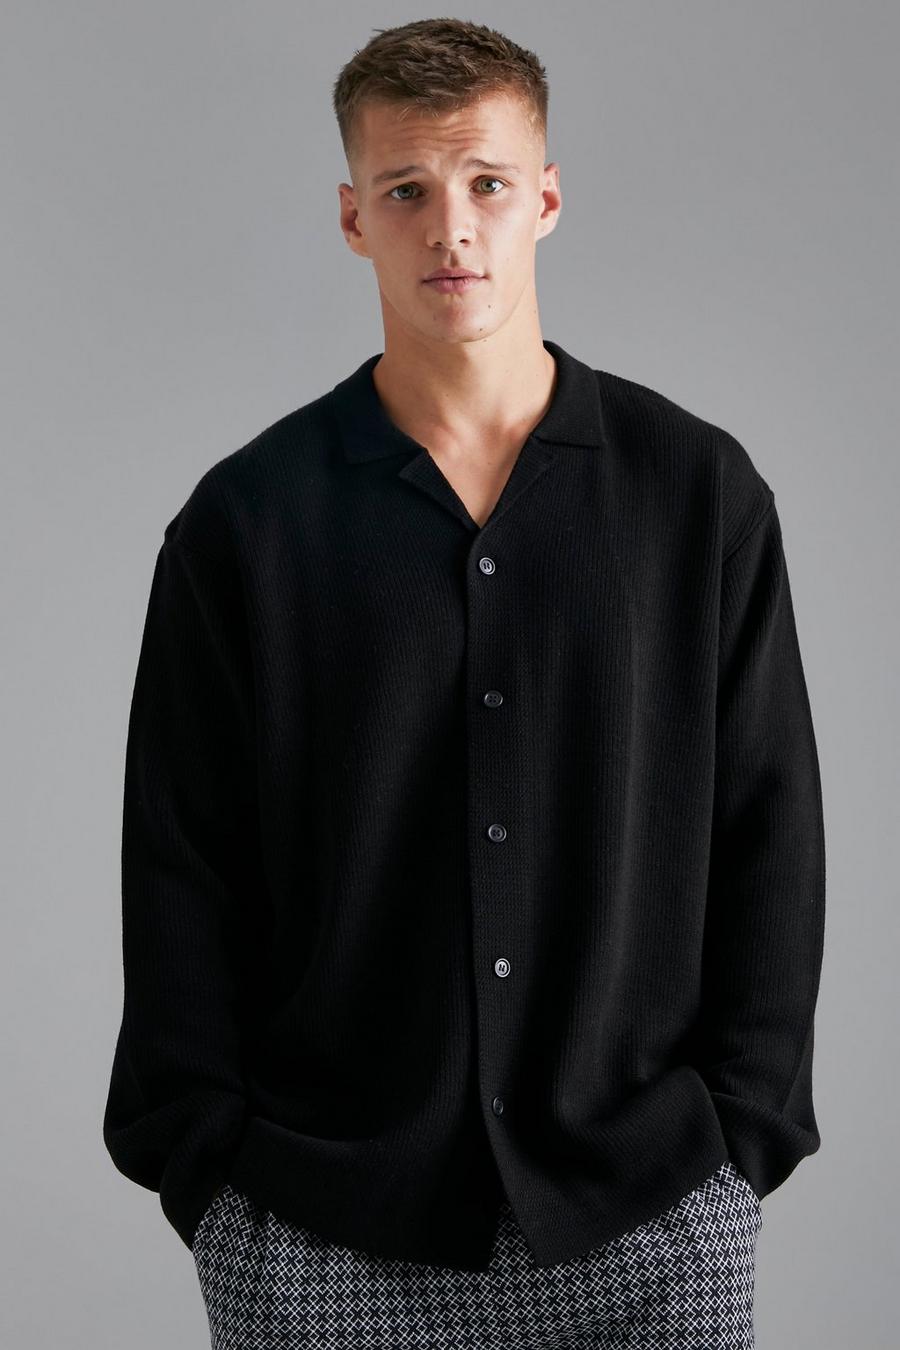 שחור negro חולצה בסריגת ריב עם צווארון שטוח ושרוולים קצרים, לגברים גבוהים